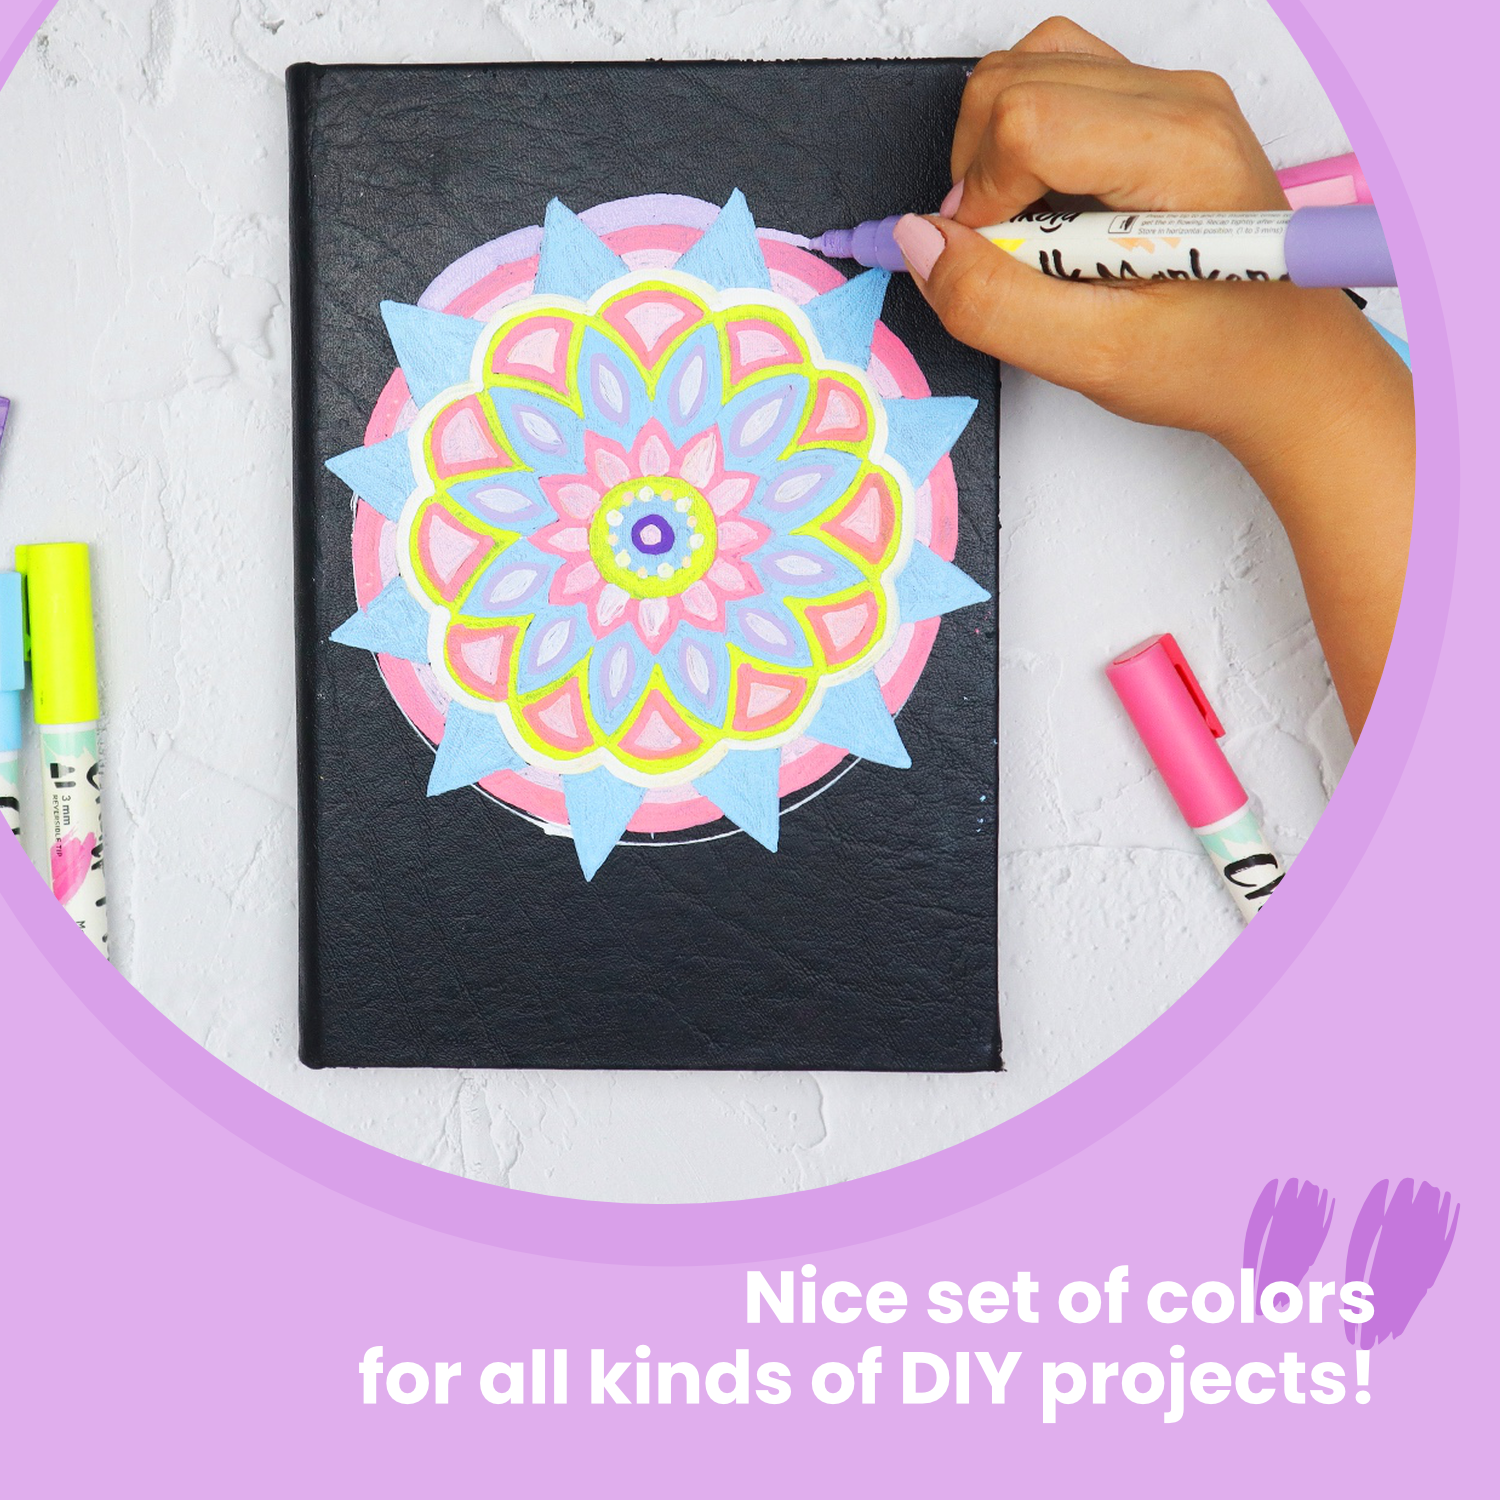 Easy Finger Painting Idea for Beginners - Chalkola - Chalkola Art Supply